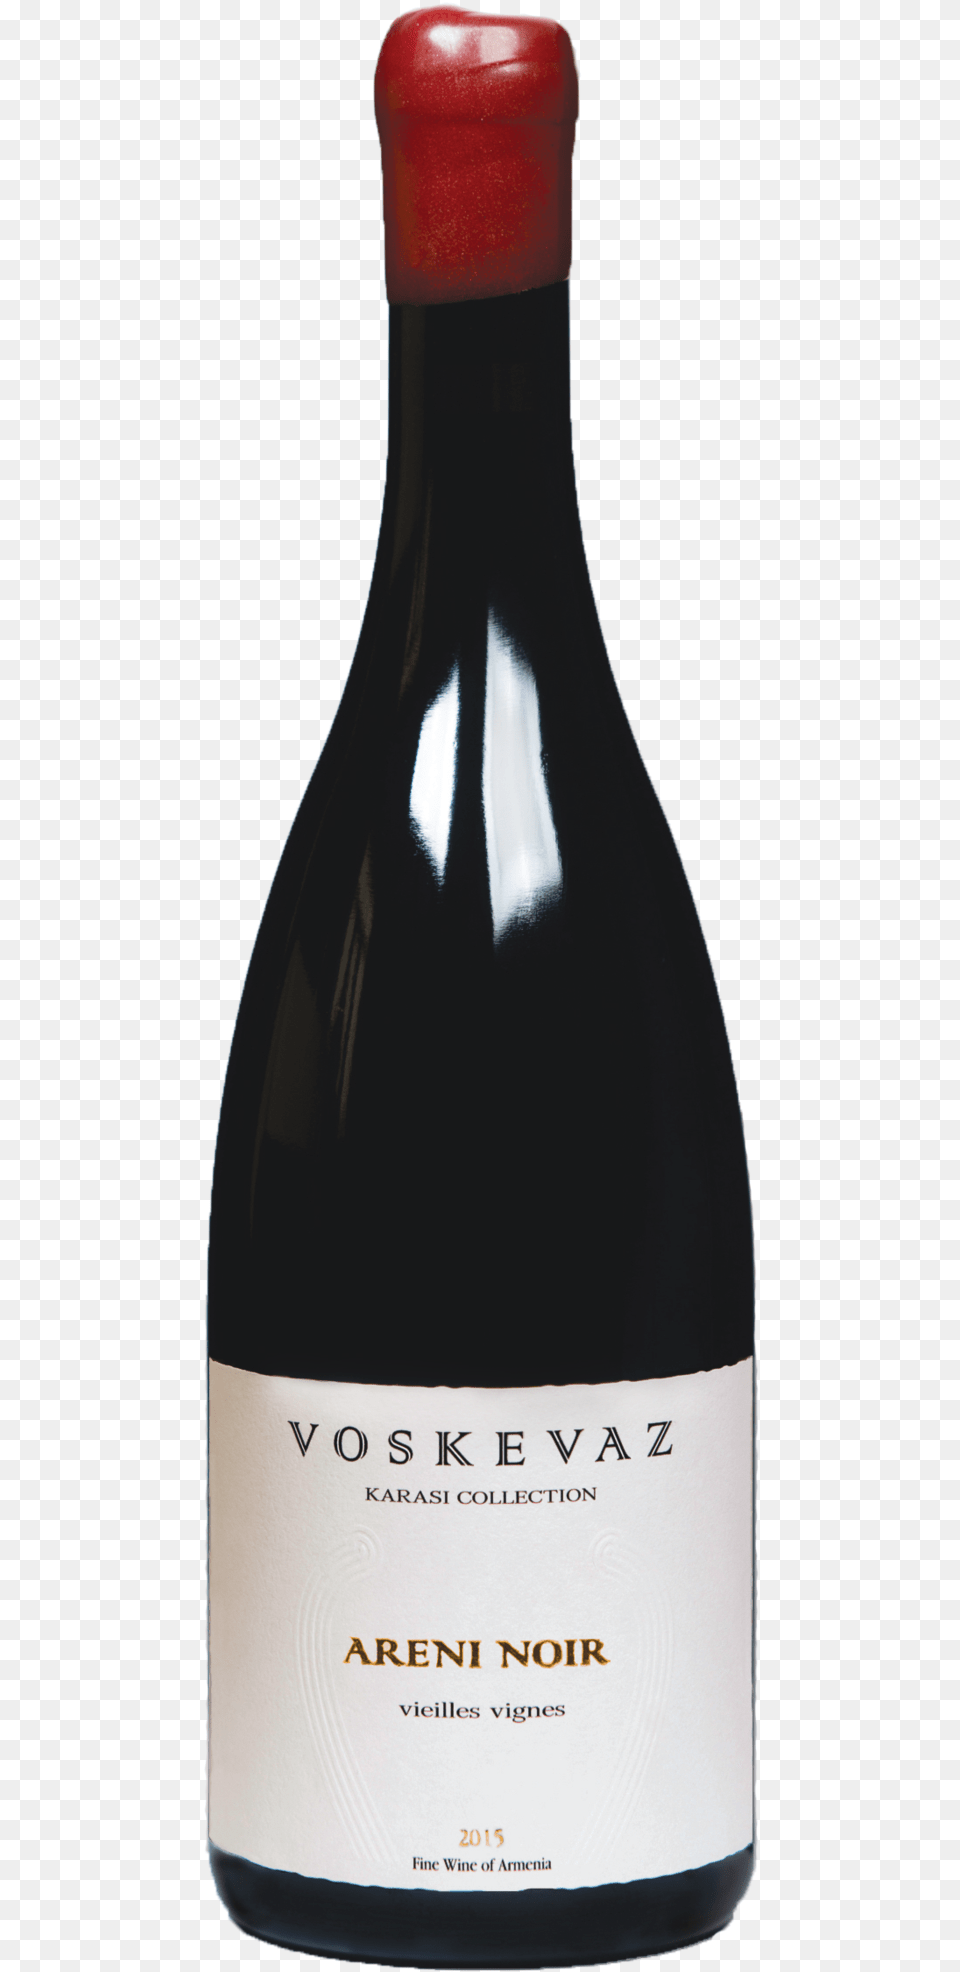 Voskevaz Christmas Ultimate Box Offer Wine Bottle, Alcohol, Beverage, Liquor, Wine Bottle Free Transparent Png